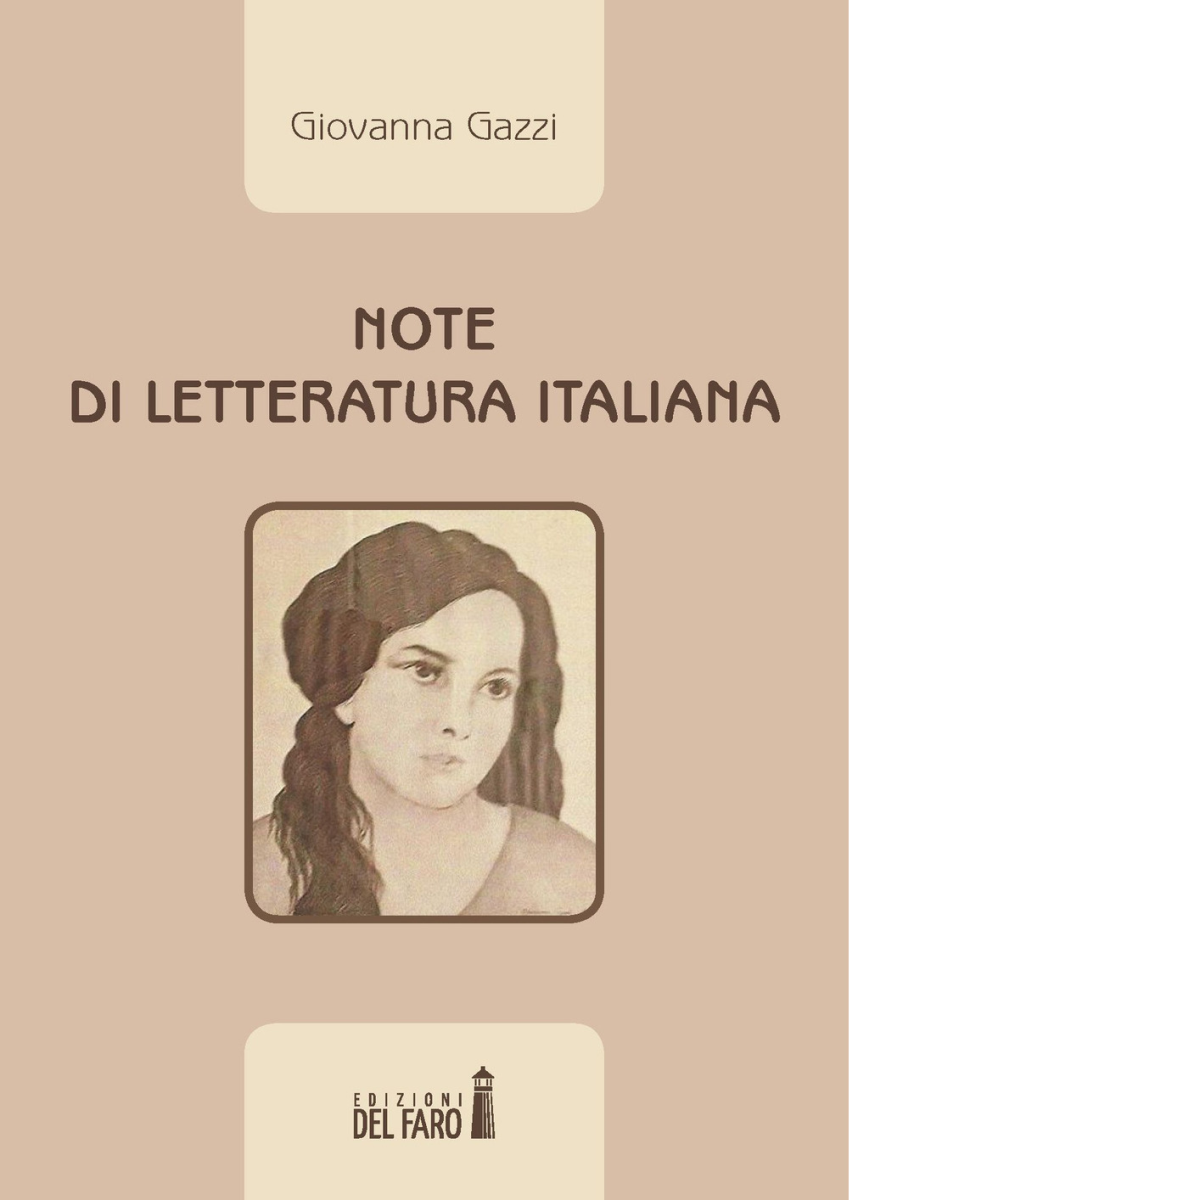 NOTE DI LETTERATURA ITALIANA di Gazzi Giovanna - Del faro, 2018